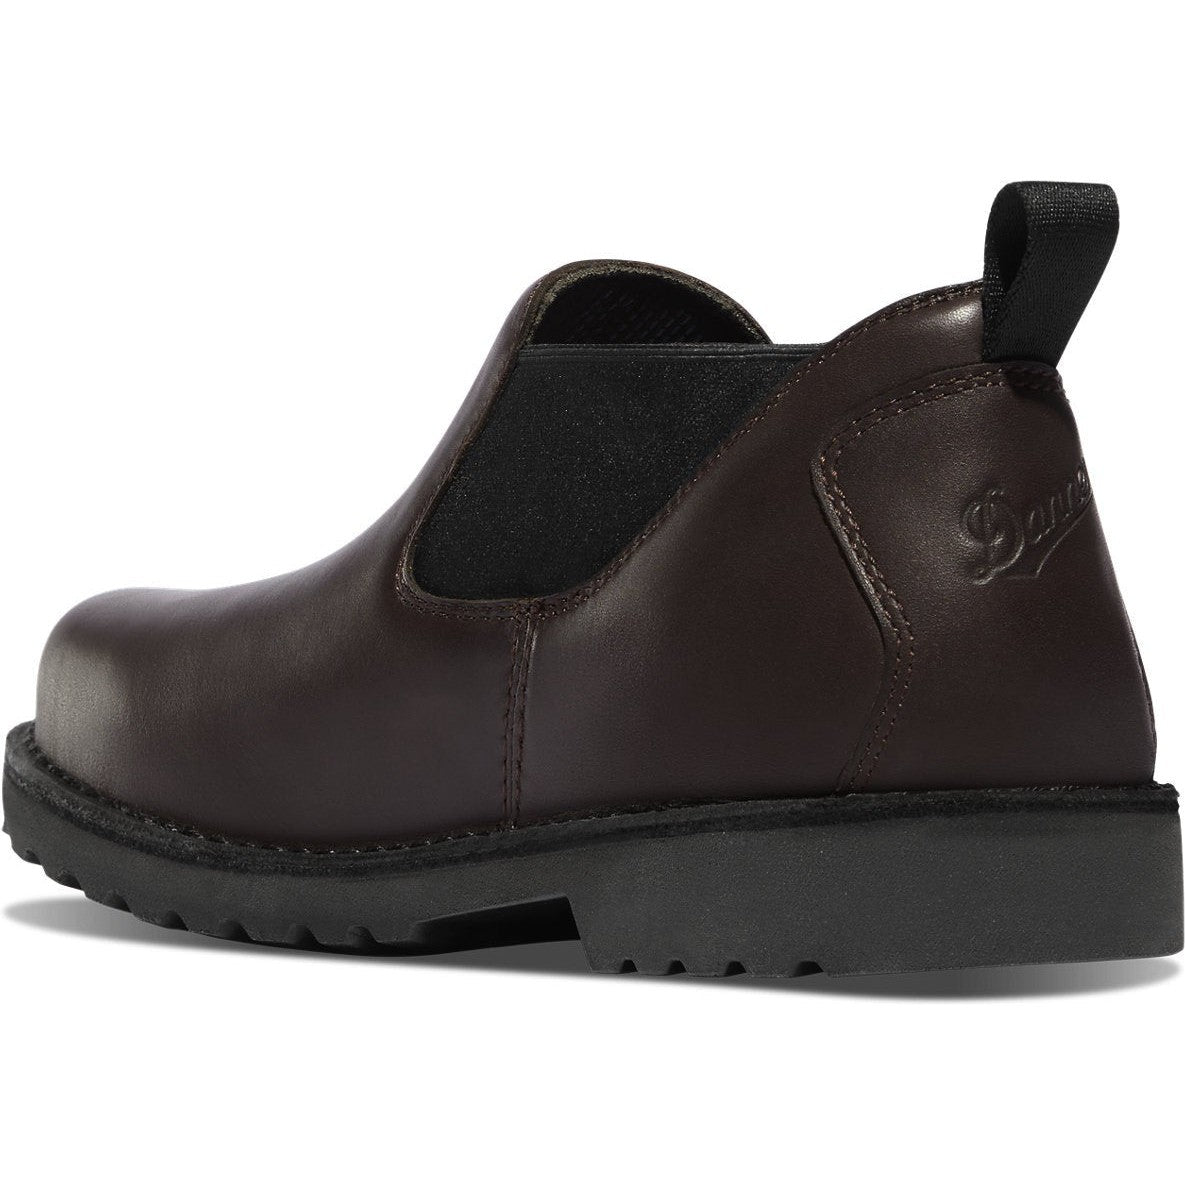 Danner Men's Romeo 3" Plain Toe Slip Resist Work Shoe -Brown- 44030  - Overlook Boots